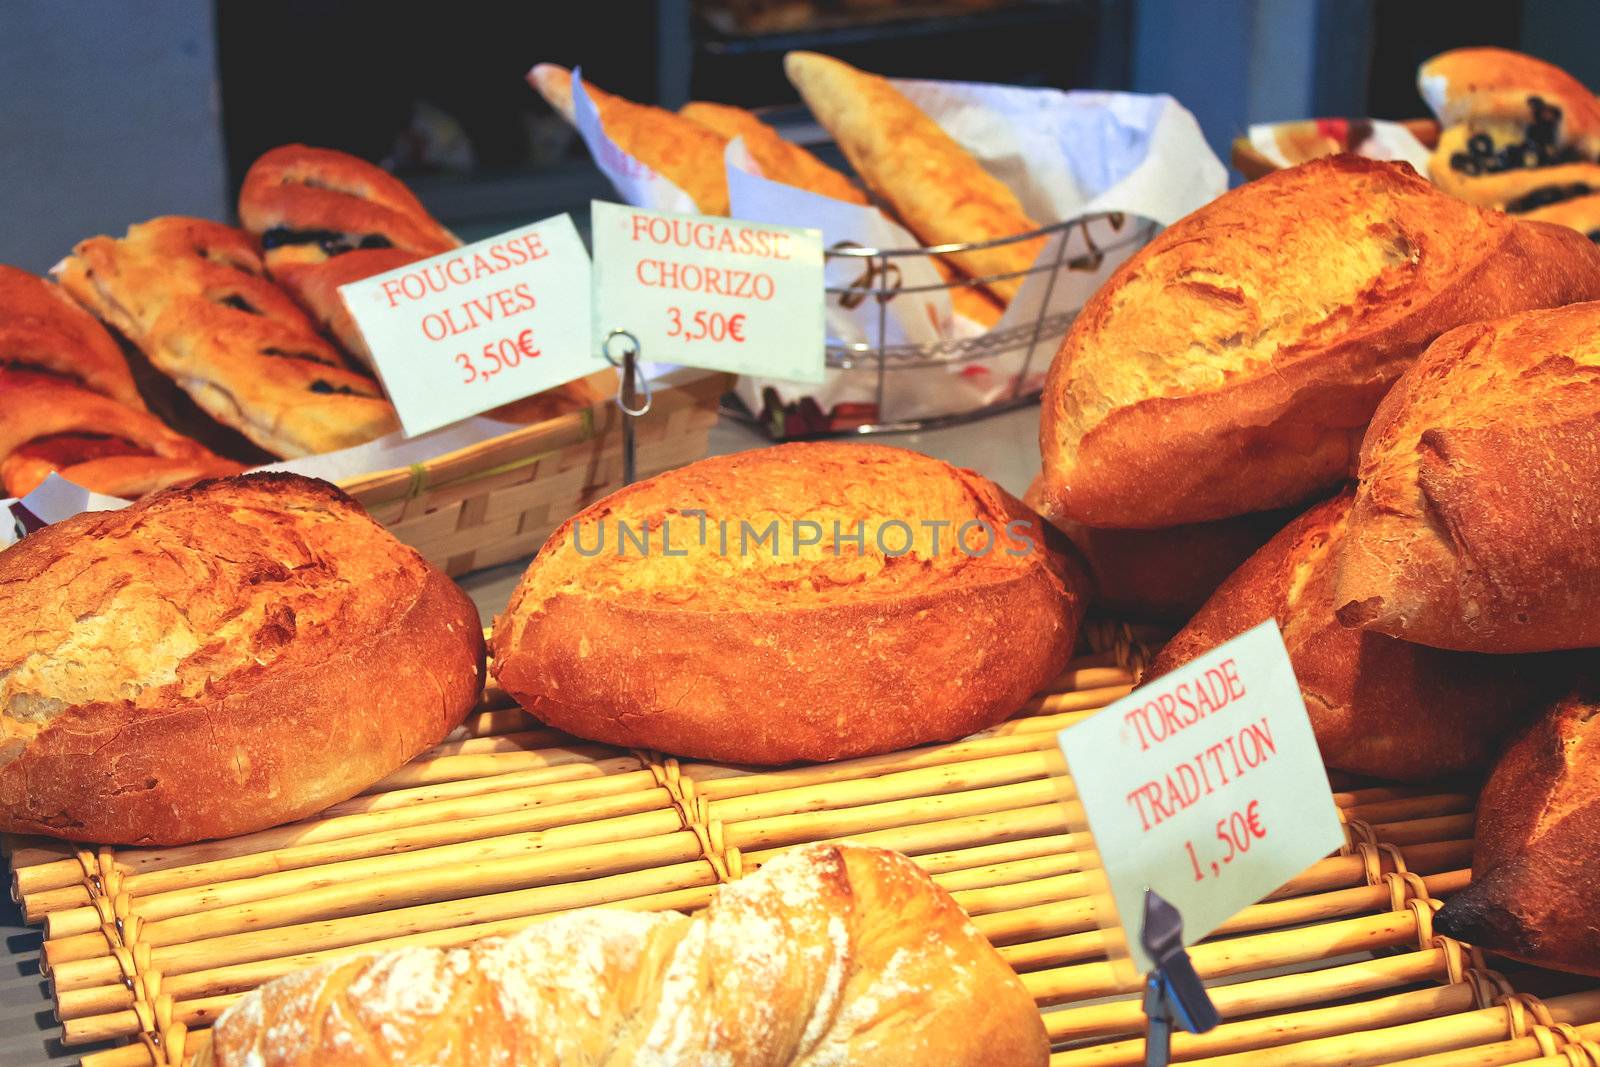 Bread in a shop window